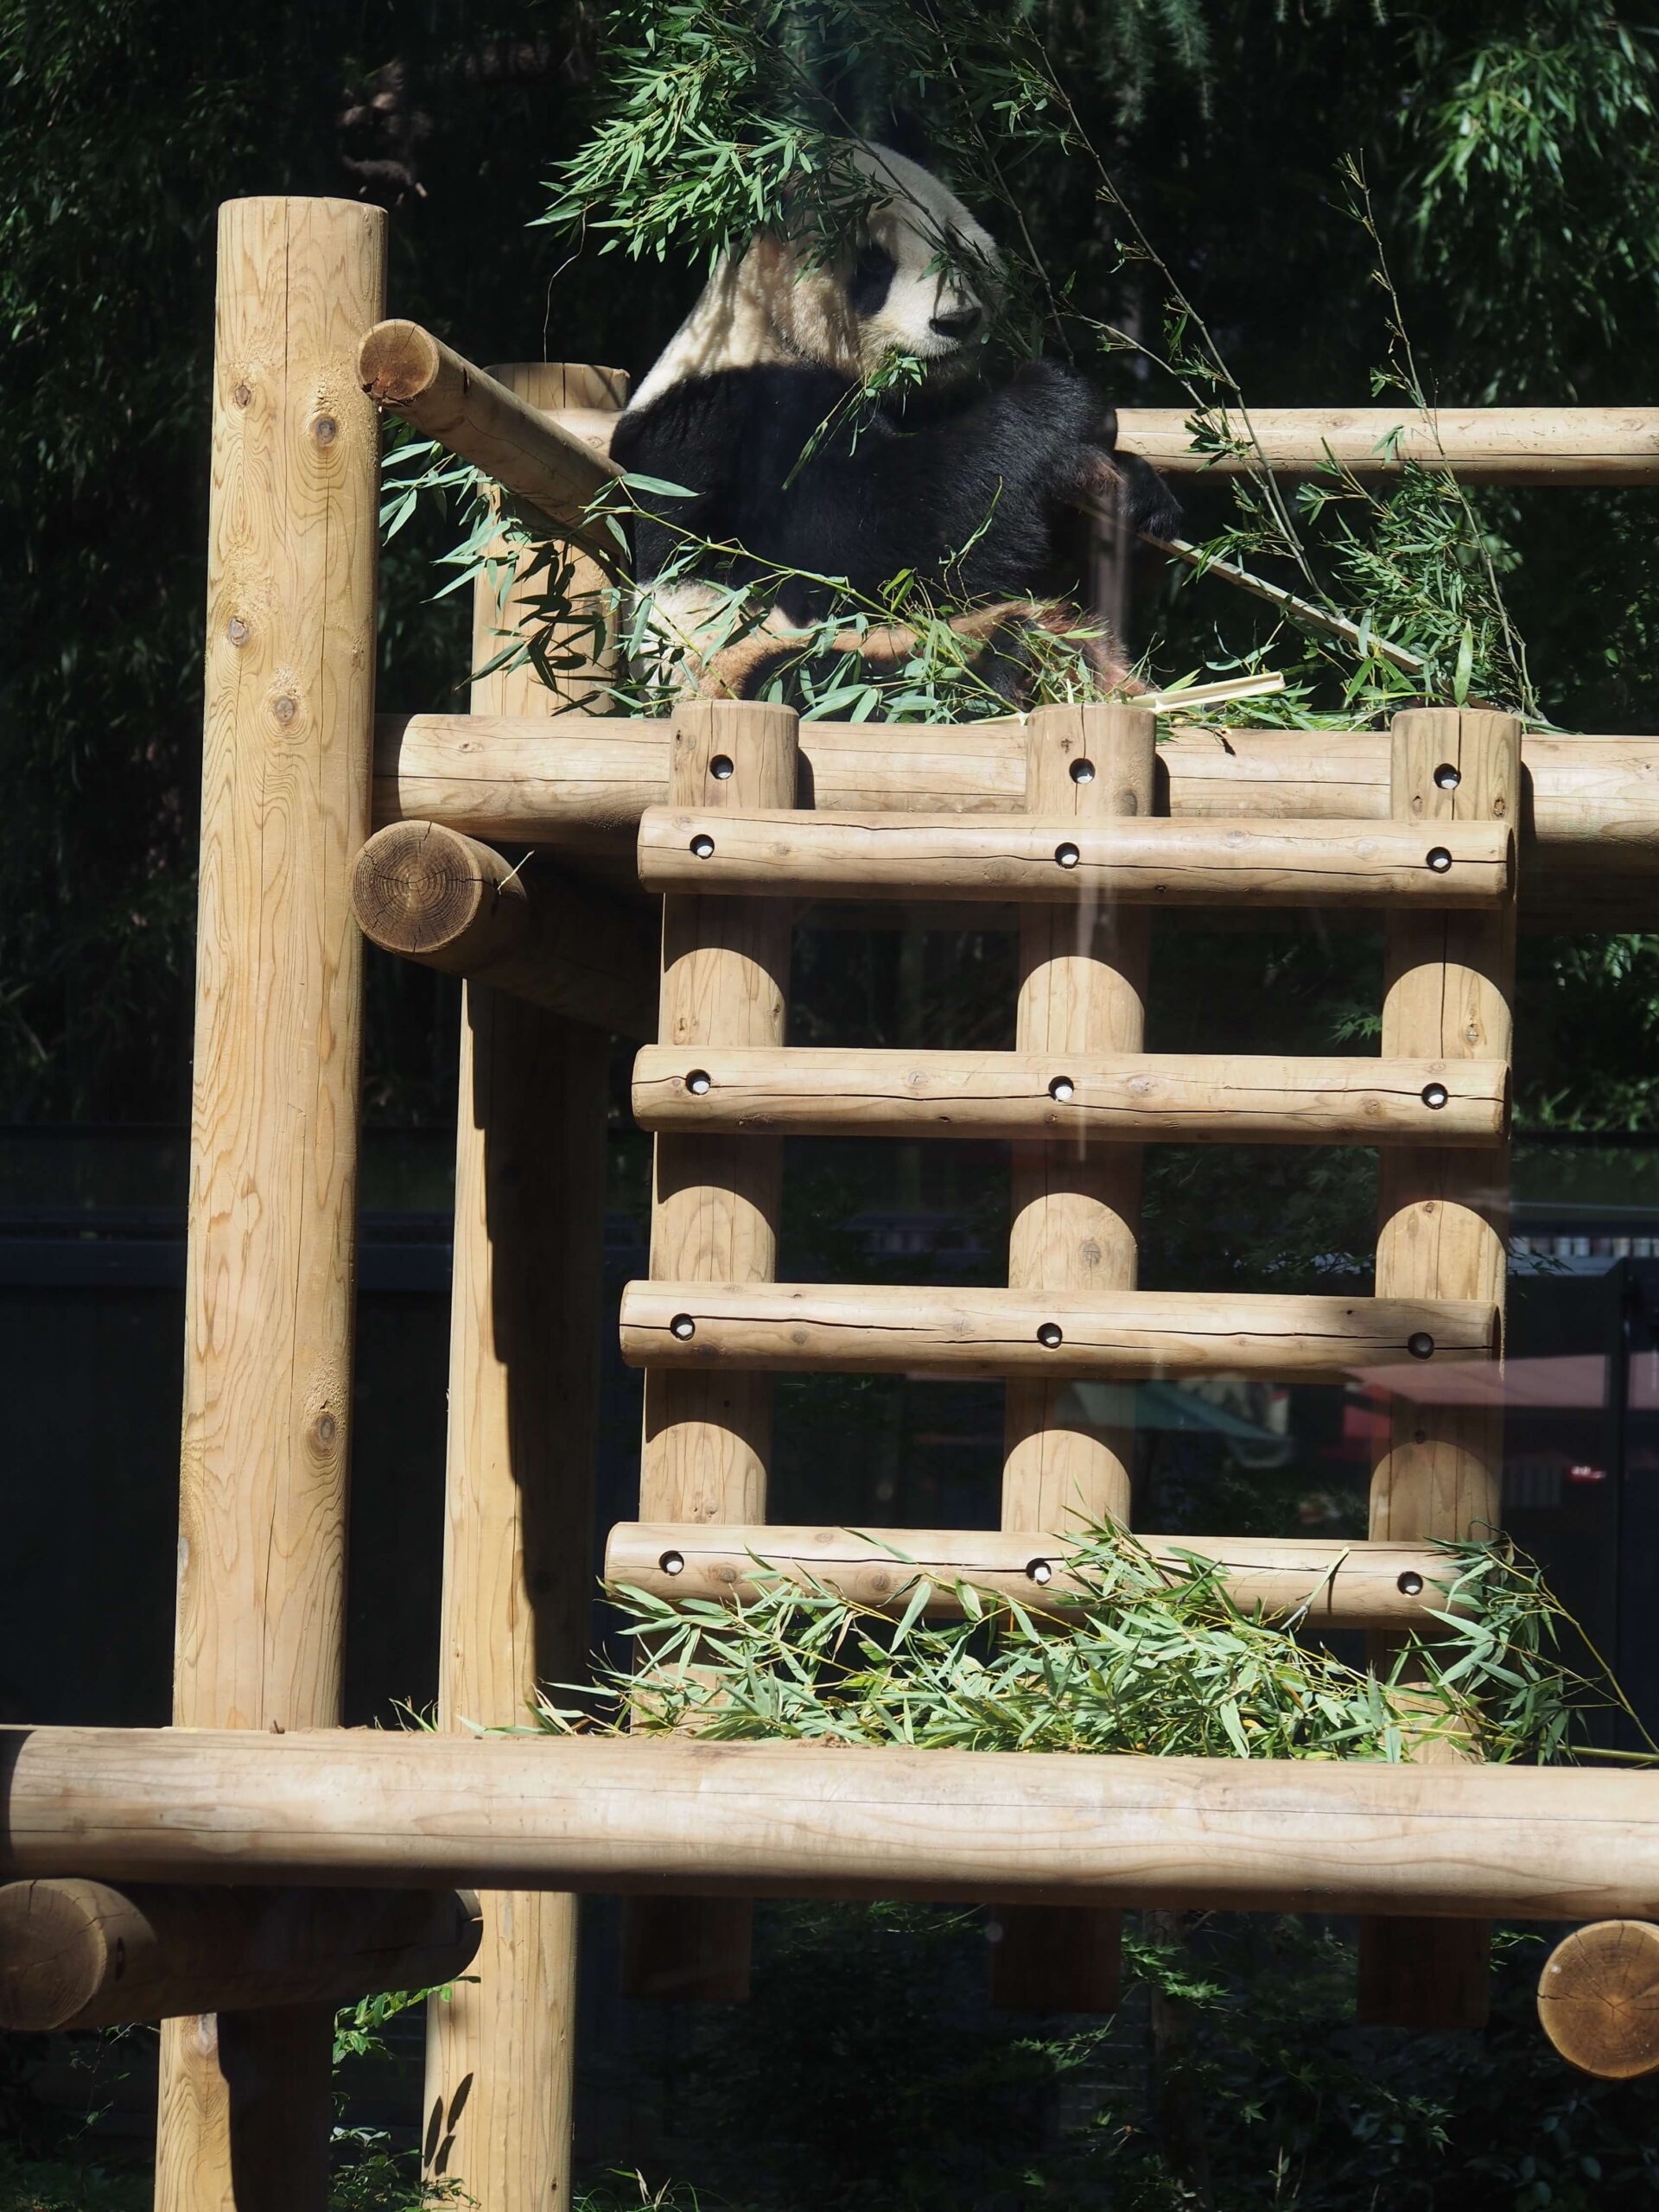 東京上野動物園のジャイアントパンダリーリーが木の上で笹を食べている